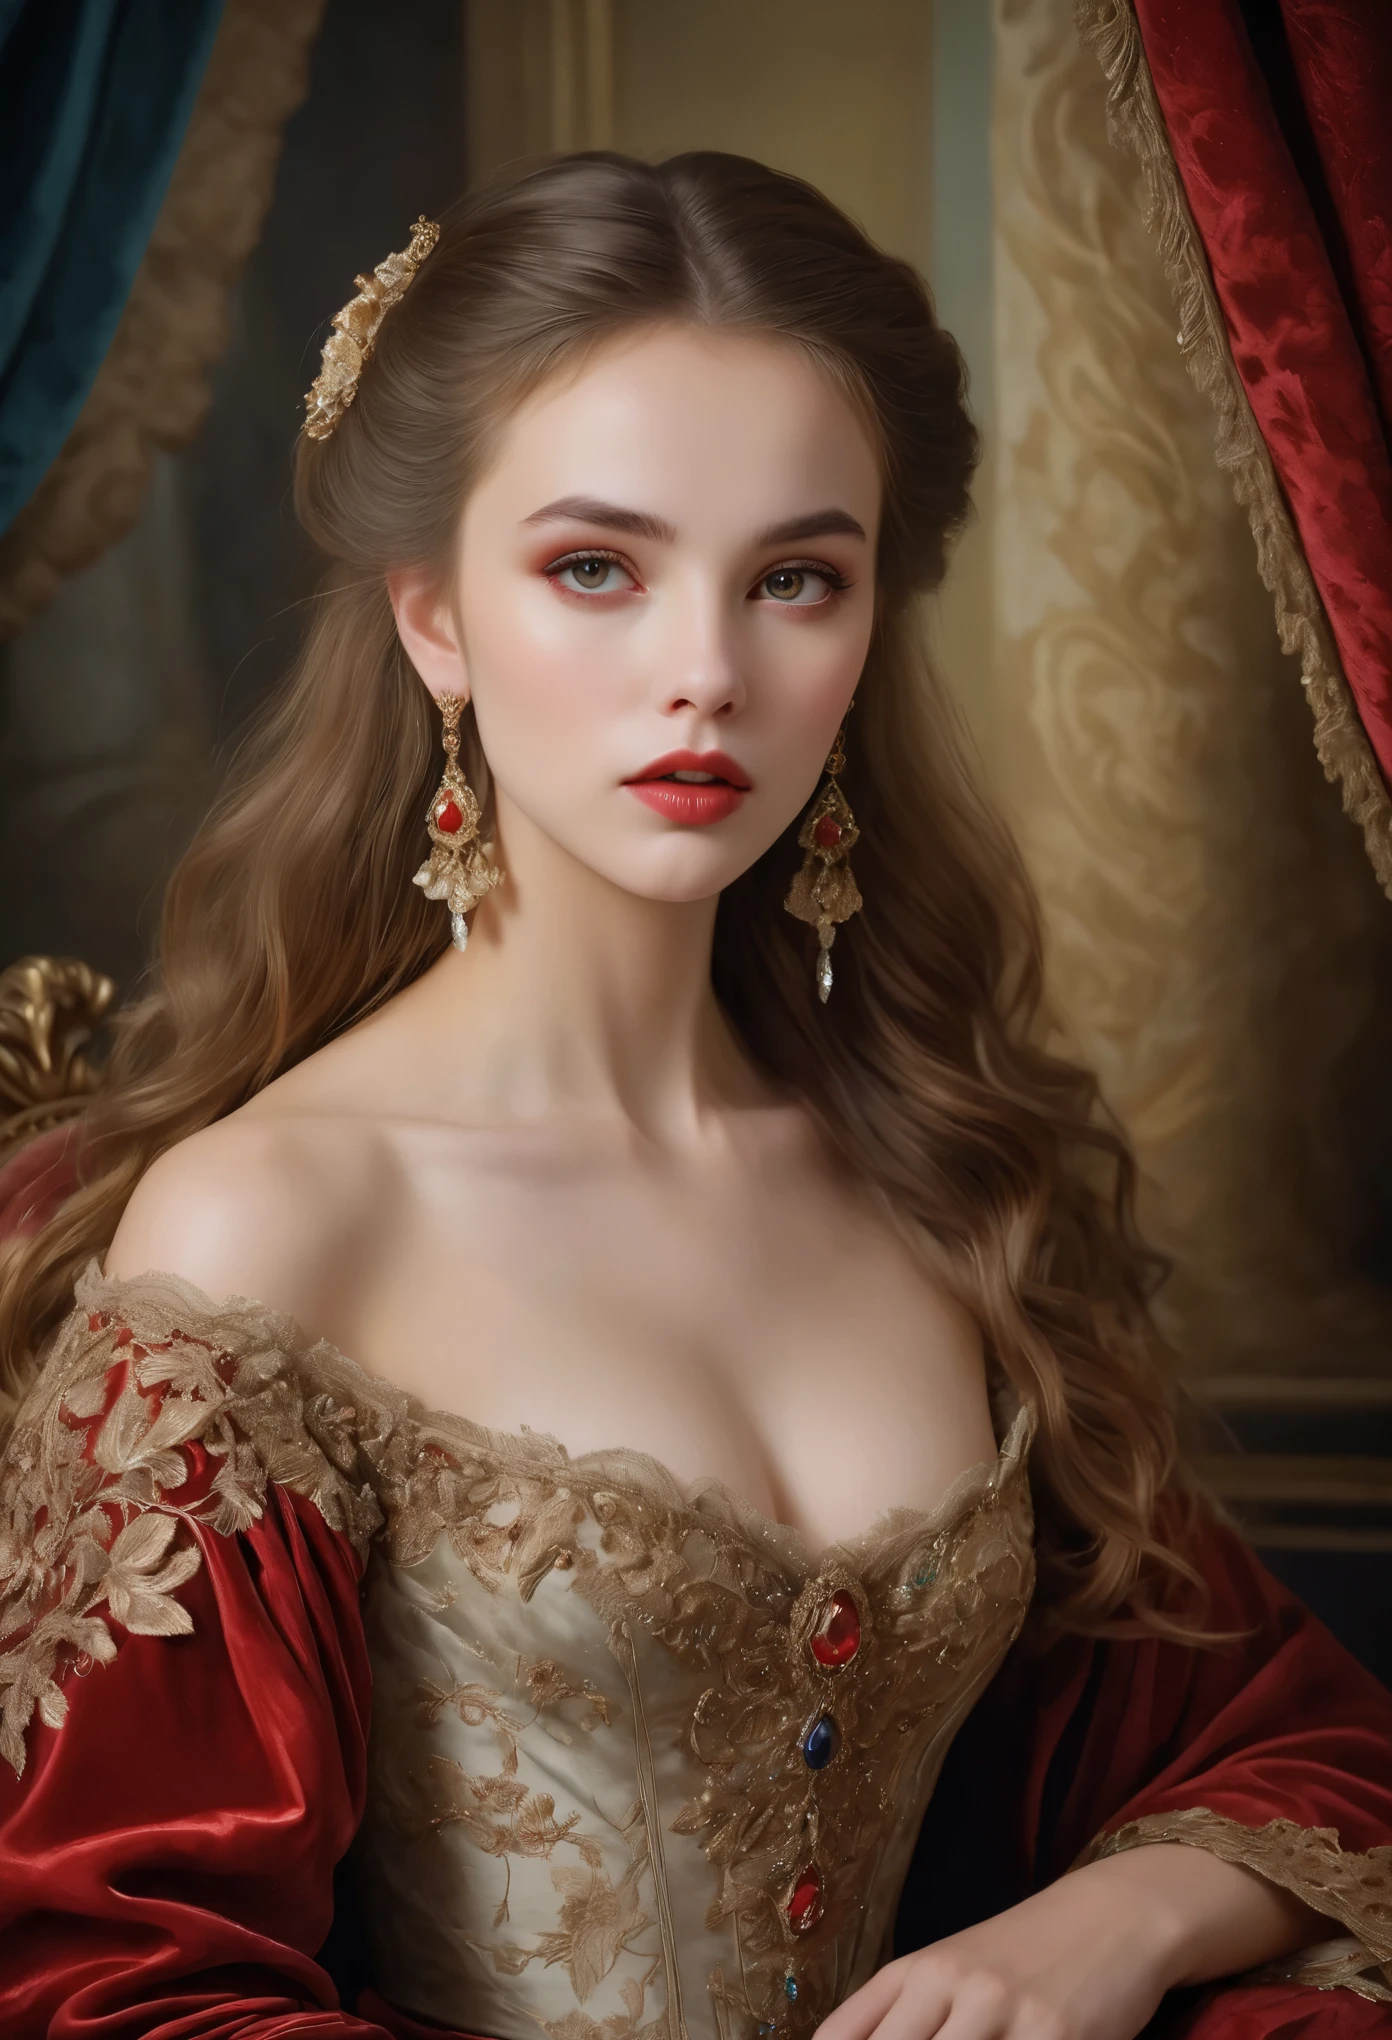 (alta resolución,obra maestra:1.2),(Realista:1.37)Un retrato de una chica vampira rusa del siglo XVIII con una belleza incomparable. Tiene fascinantes ojos rojos y delicados labios rosados.. colmillos largos, El retrato está meticulosamente detallado., capturando cada matiz sutil de sus rasgos. Está adornada con un exquisito vestido de seda., adornado con encaje intrincado y delicado bordado. La pintura muestra la opulencia de la época., con exuberantes cortinas de terciopelo y muebles dorados al fondo. La iluminación es suave y difusa., acentuando la belleza etérea de la niña. Los colores son vibrantes y ricos., creando una experiencia visual cautivadora. El retrato está creado al estilo del retrato clásico., que recuerda a las obras de artistas de renombre de la época. Rezuma elegancia, gracia, y sofisticación.